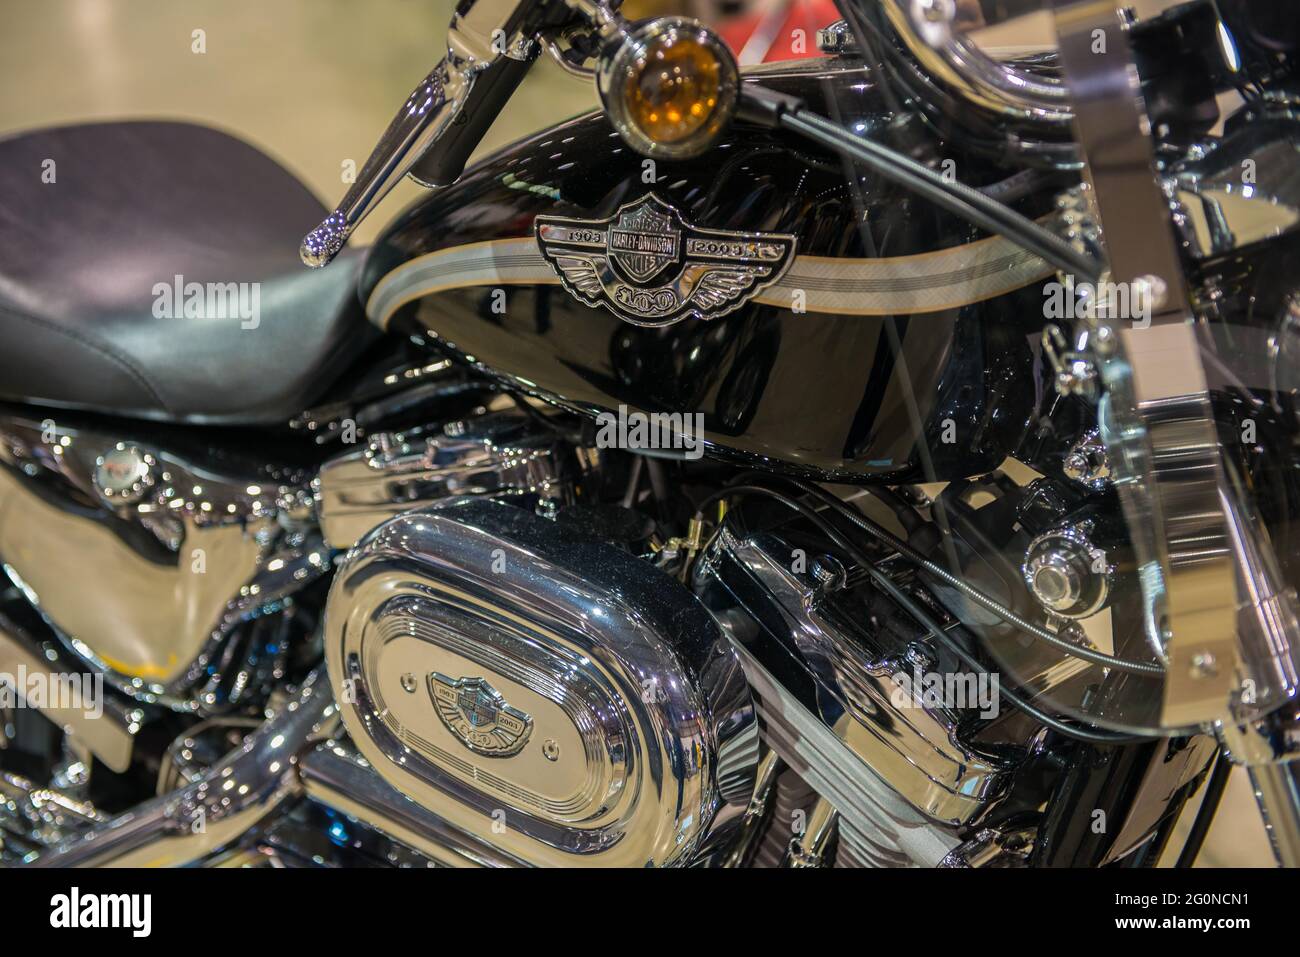 2003 Harley Davidson Sportster Stockfoto